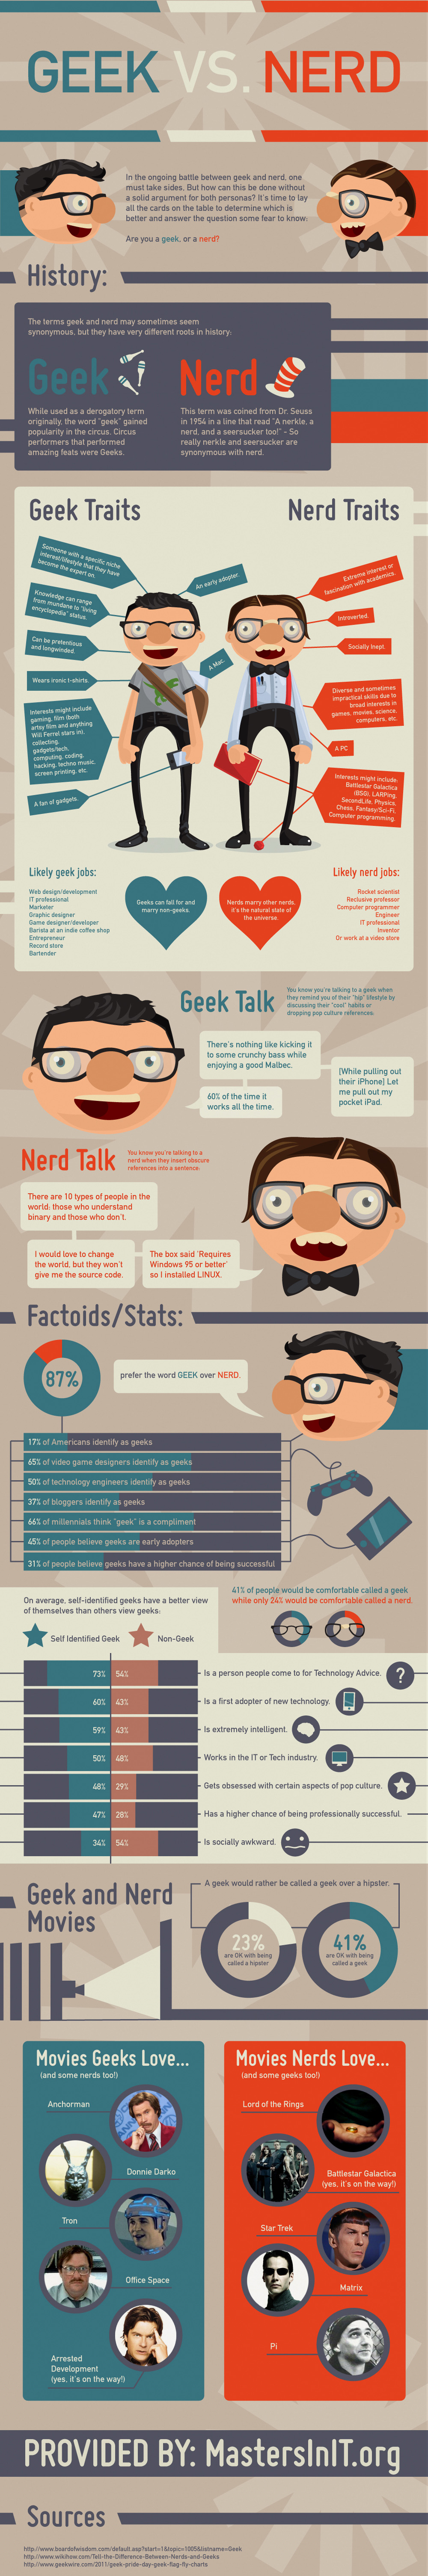 Geeks vs Nerds